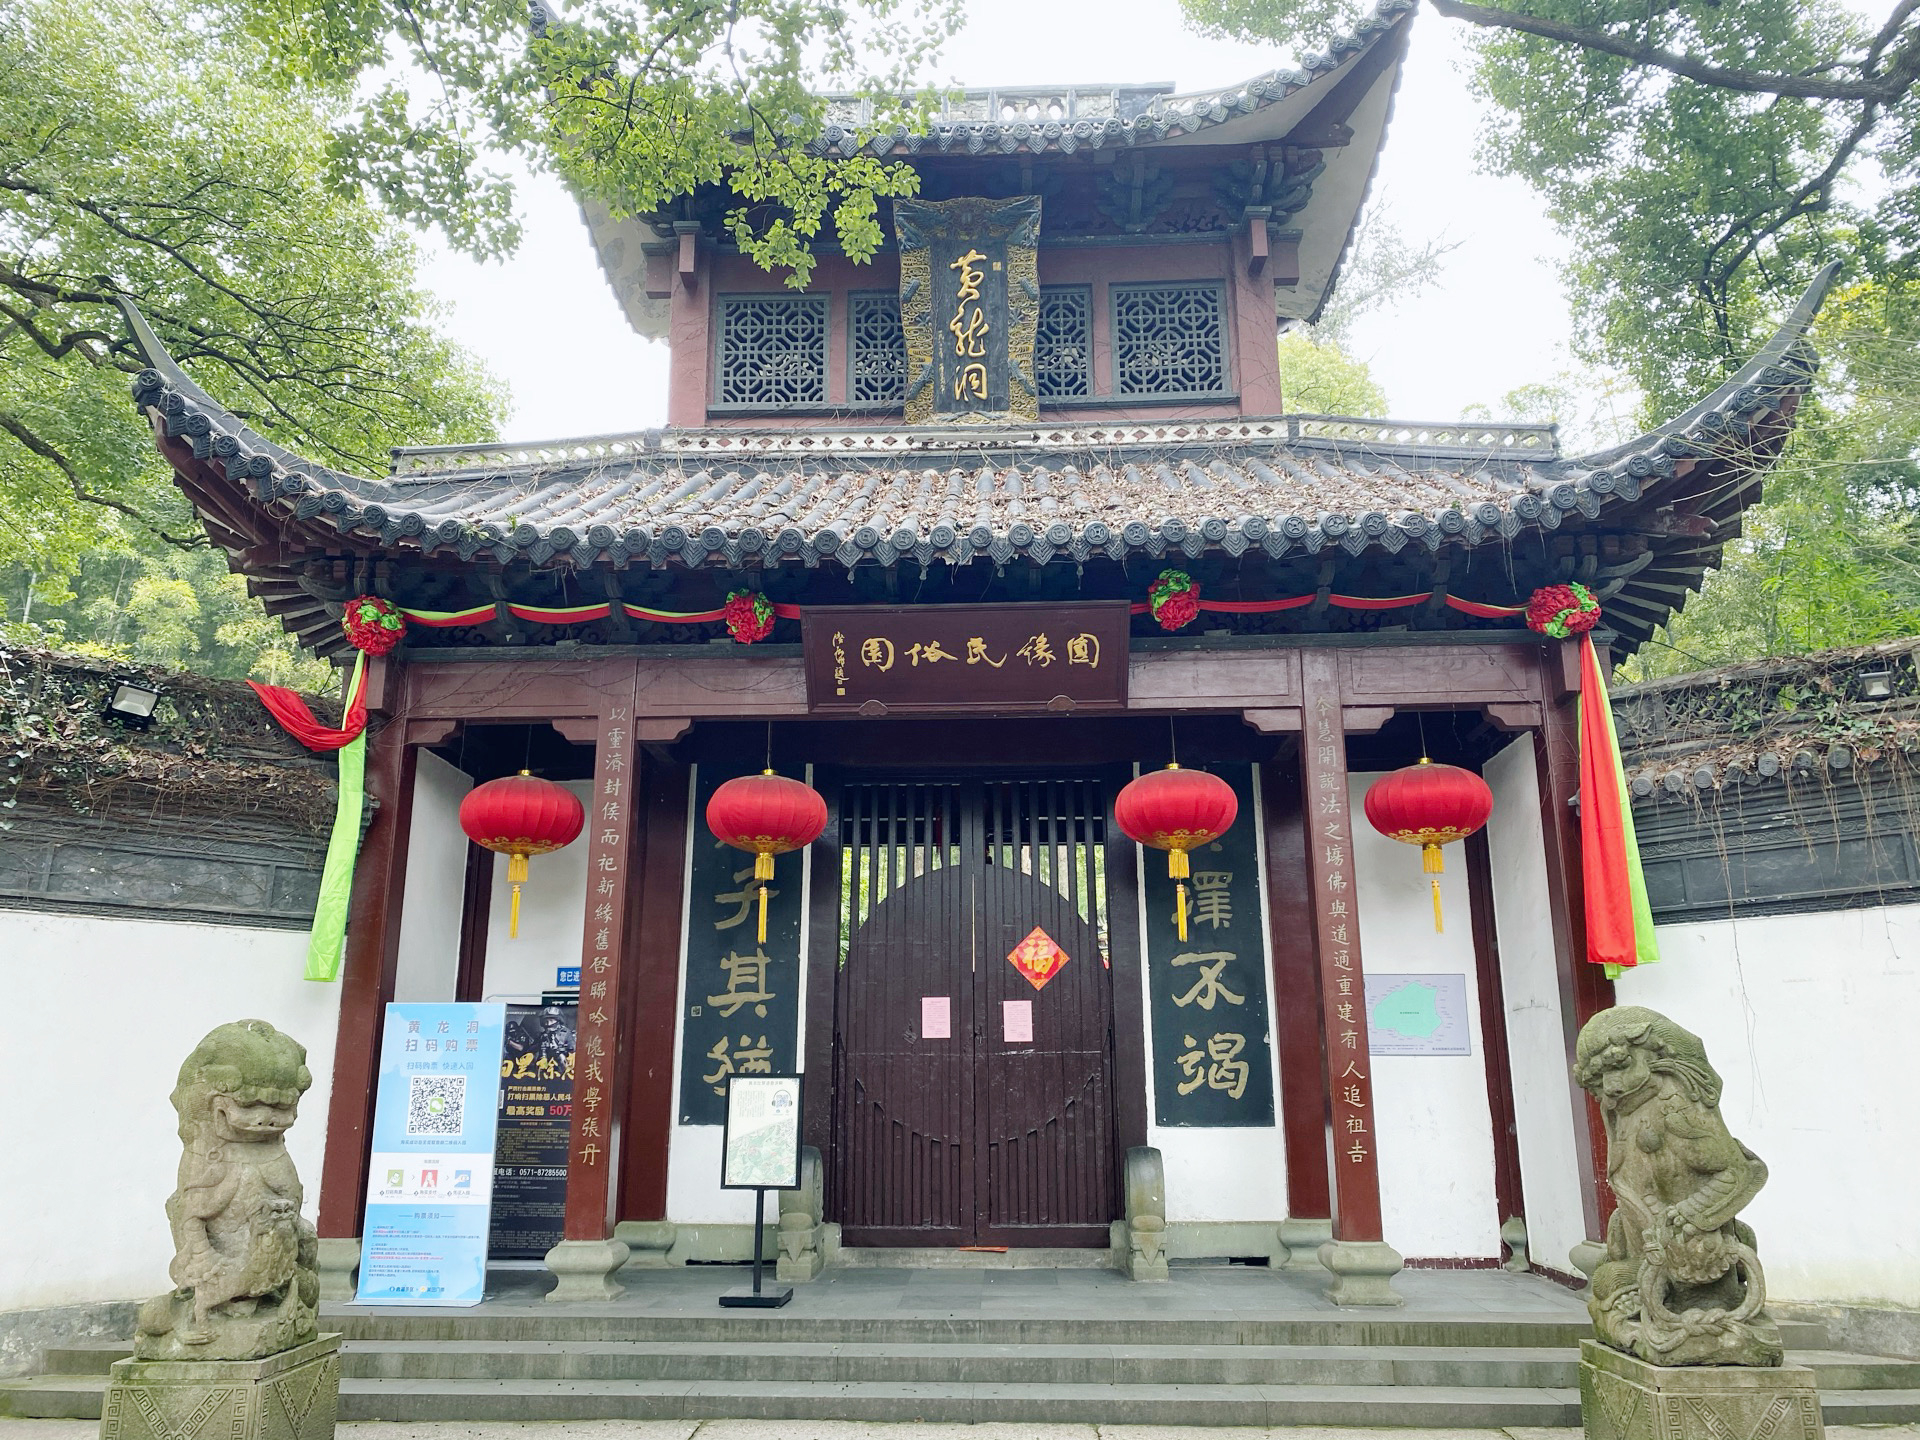 【携程攻略】杭州黄龙洞景区景点,去了可以欣赏一下造物主的神奇。门票不便宜，所以性价比不高